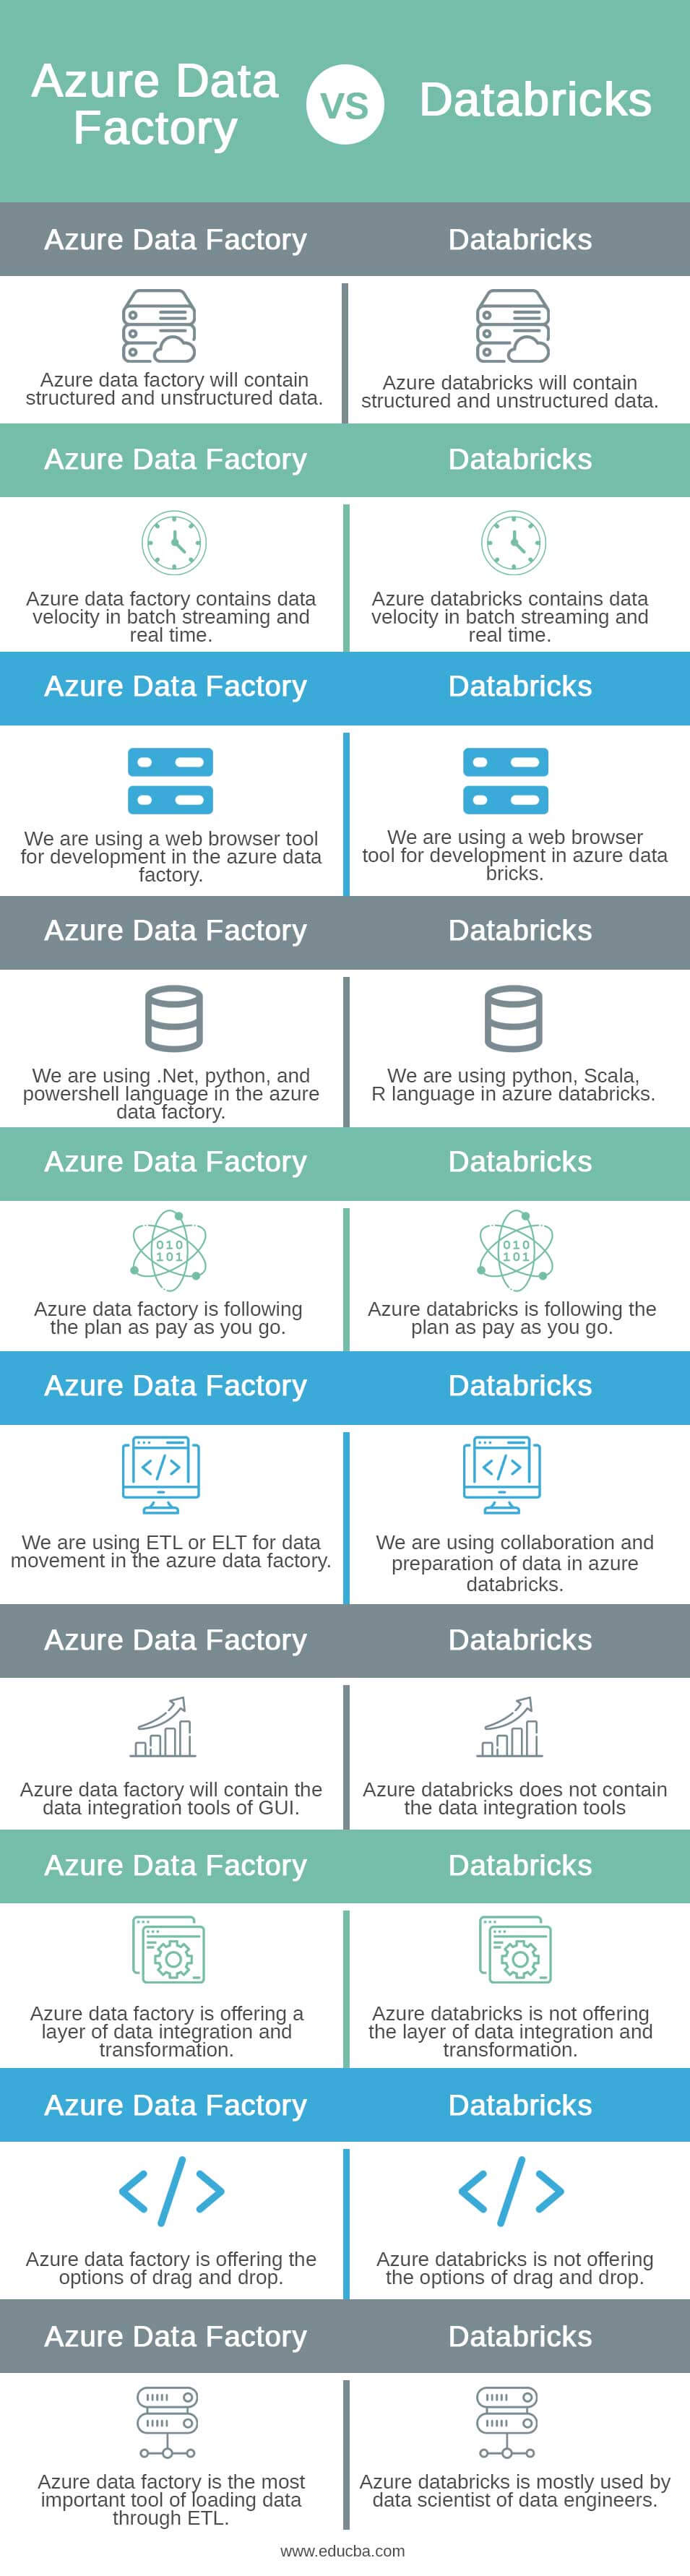 Azure Data Factory vs Databricks info